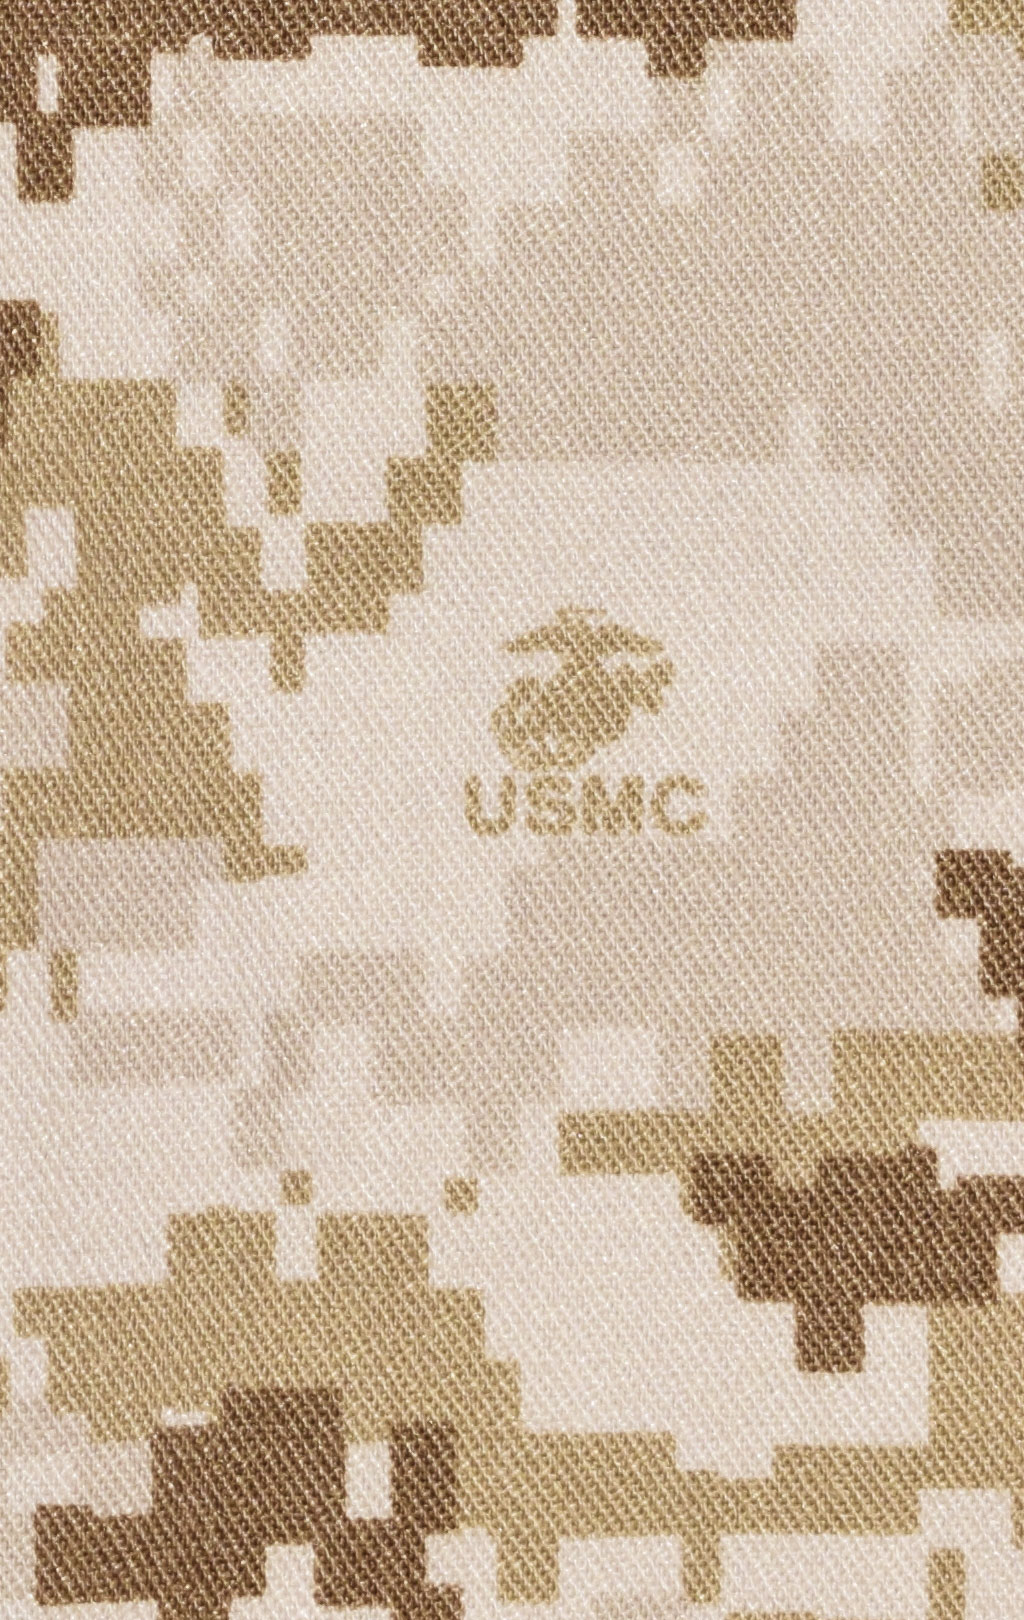 Брюки полевые USMC хлопок/нейлон marpat desert США